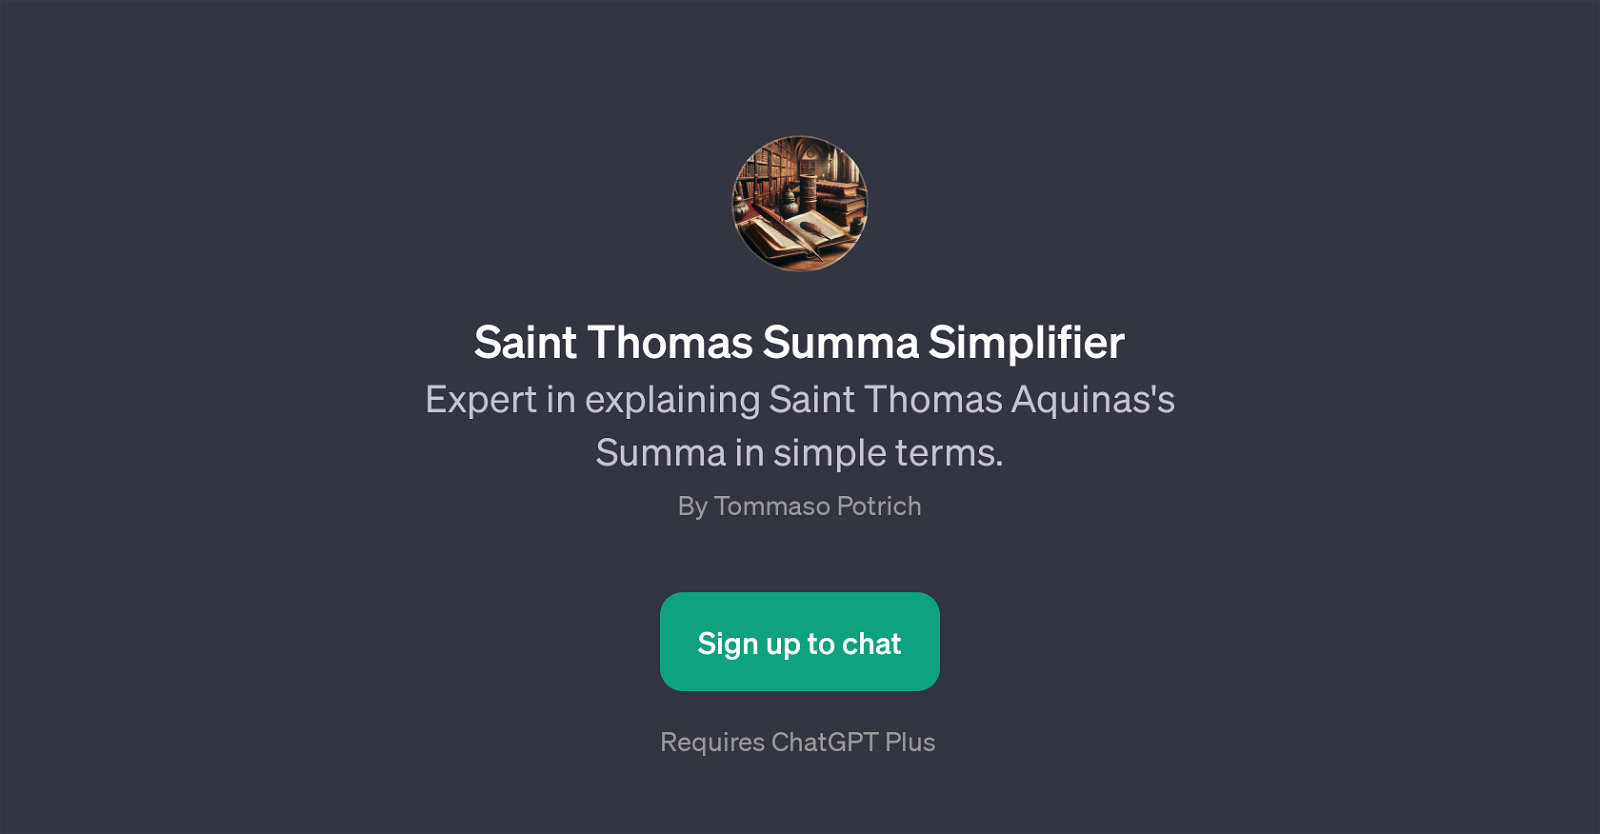 Saint Thomas Summa Simplifier website